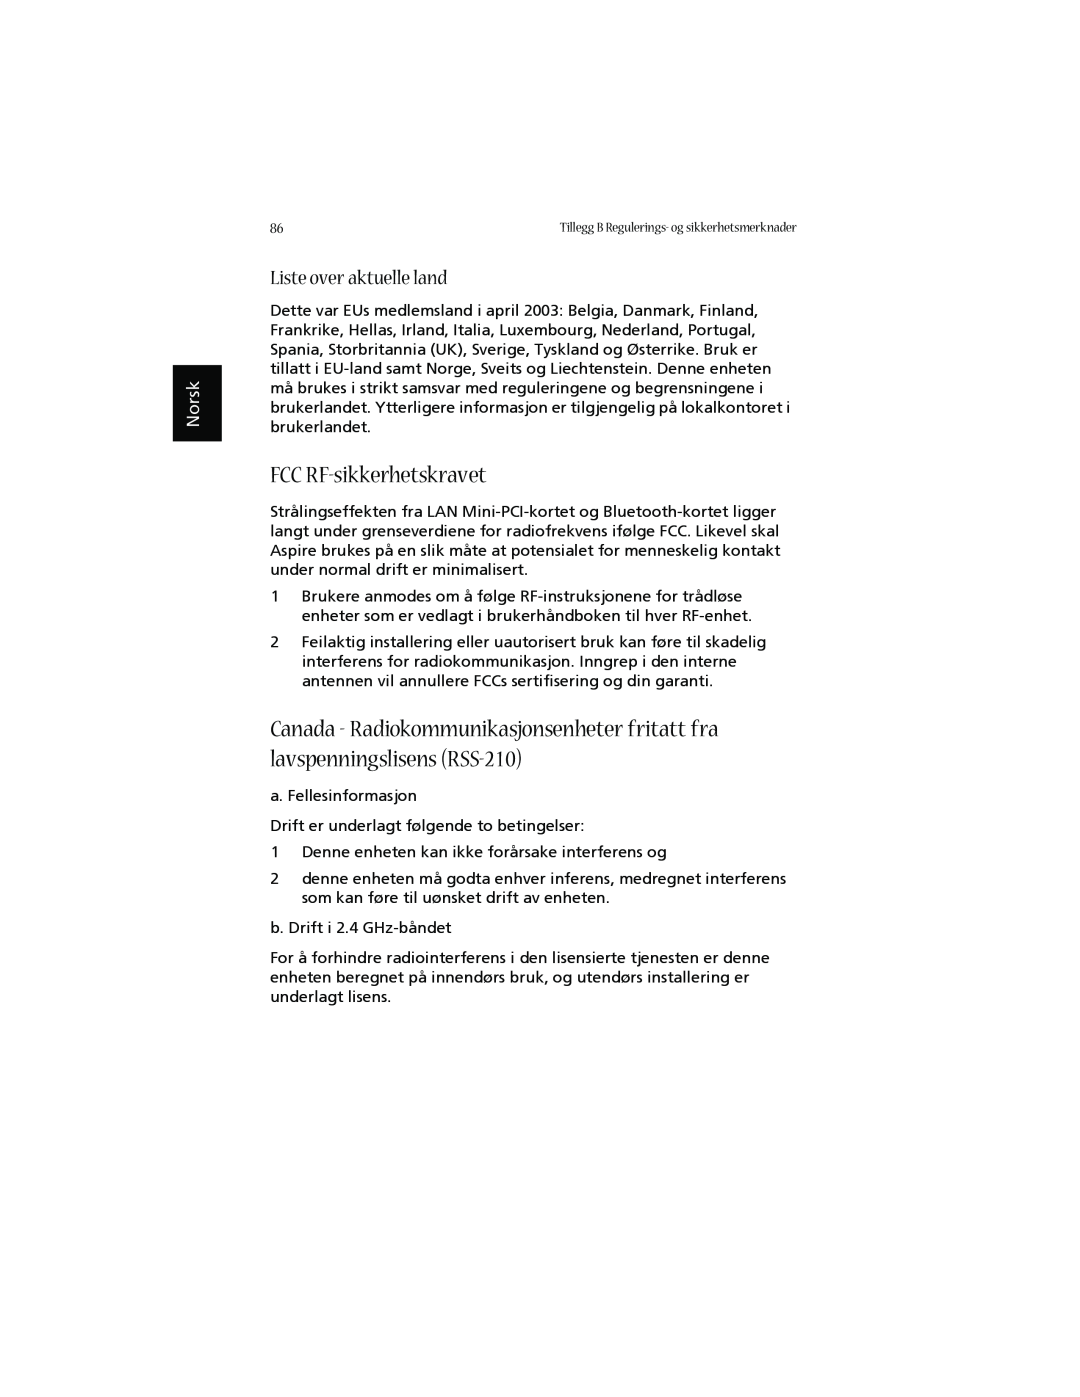 Acer 1660 manual FCC RF-sikkerhetskravet, Liste over aktuelle land, Norsk 